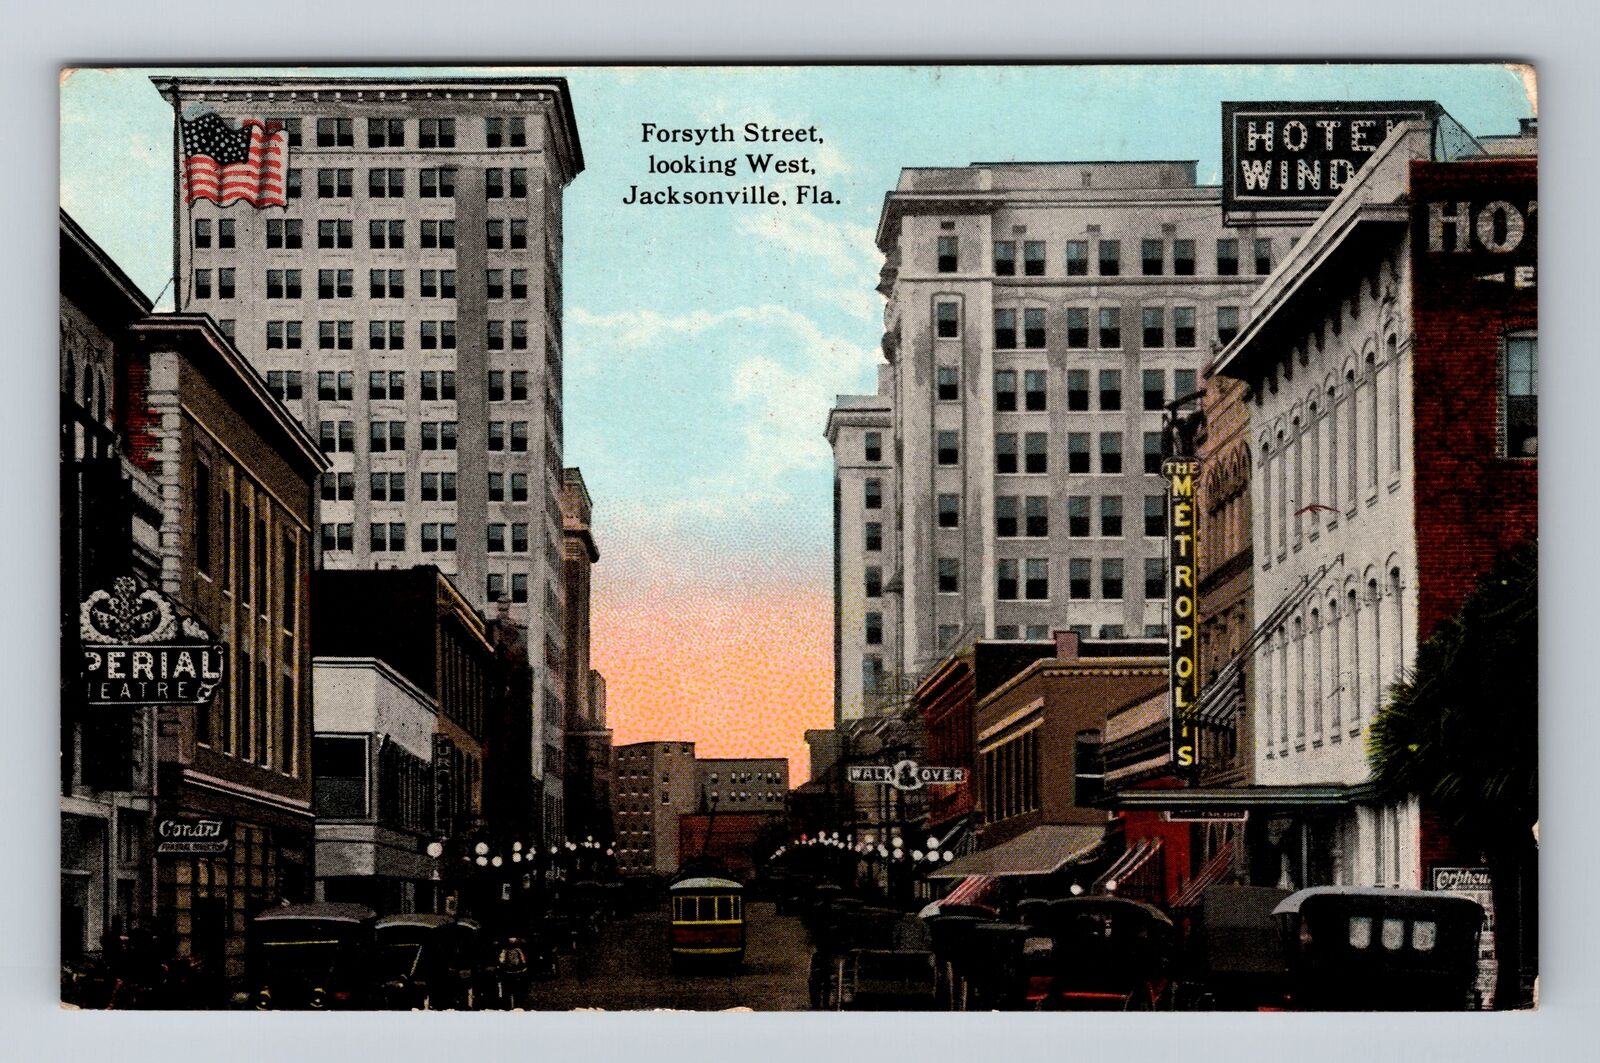 Jacksonville FL-Florida, Forsyth Street Looking West, Antique Vintage Postcard